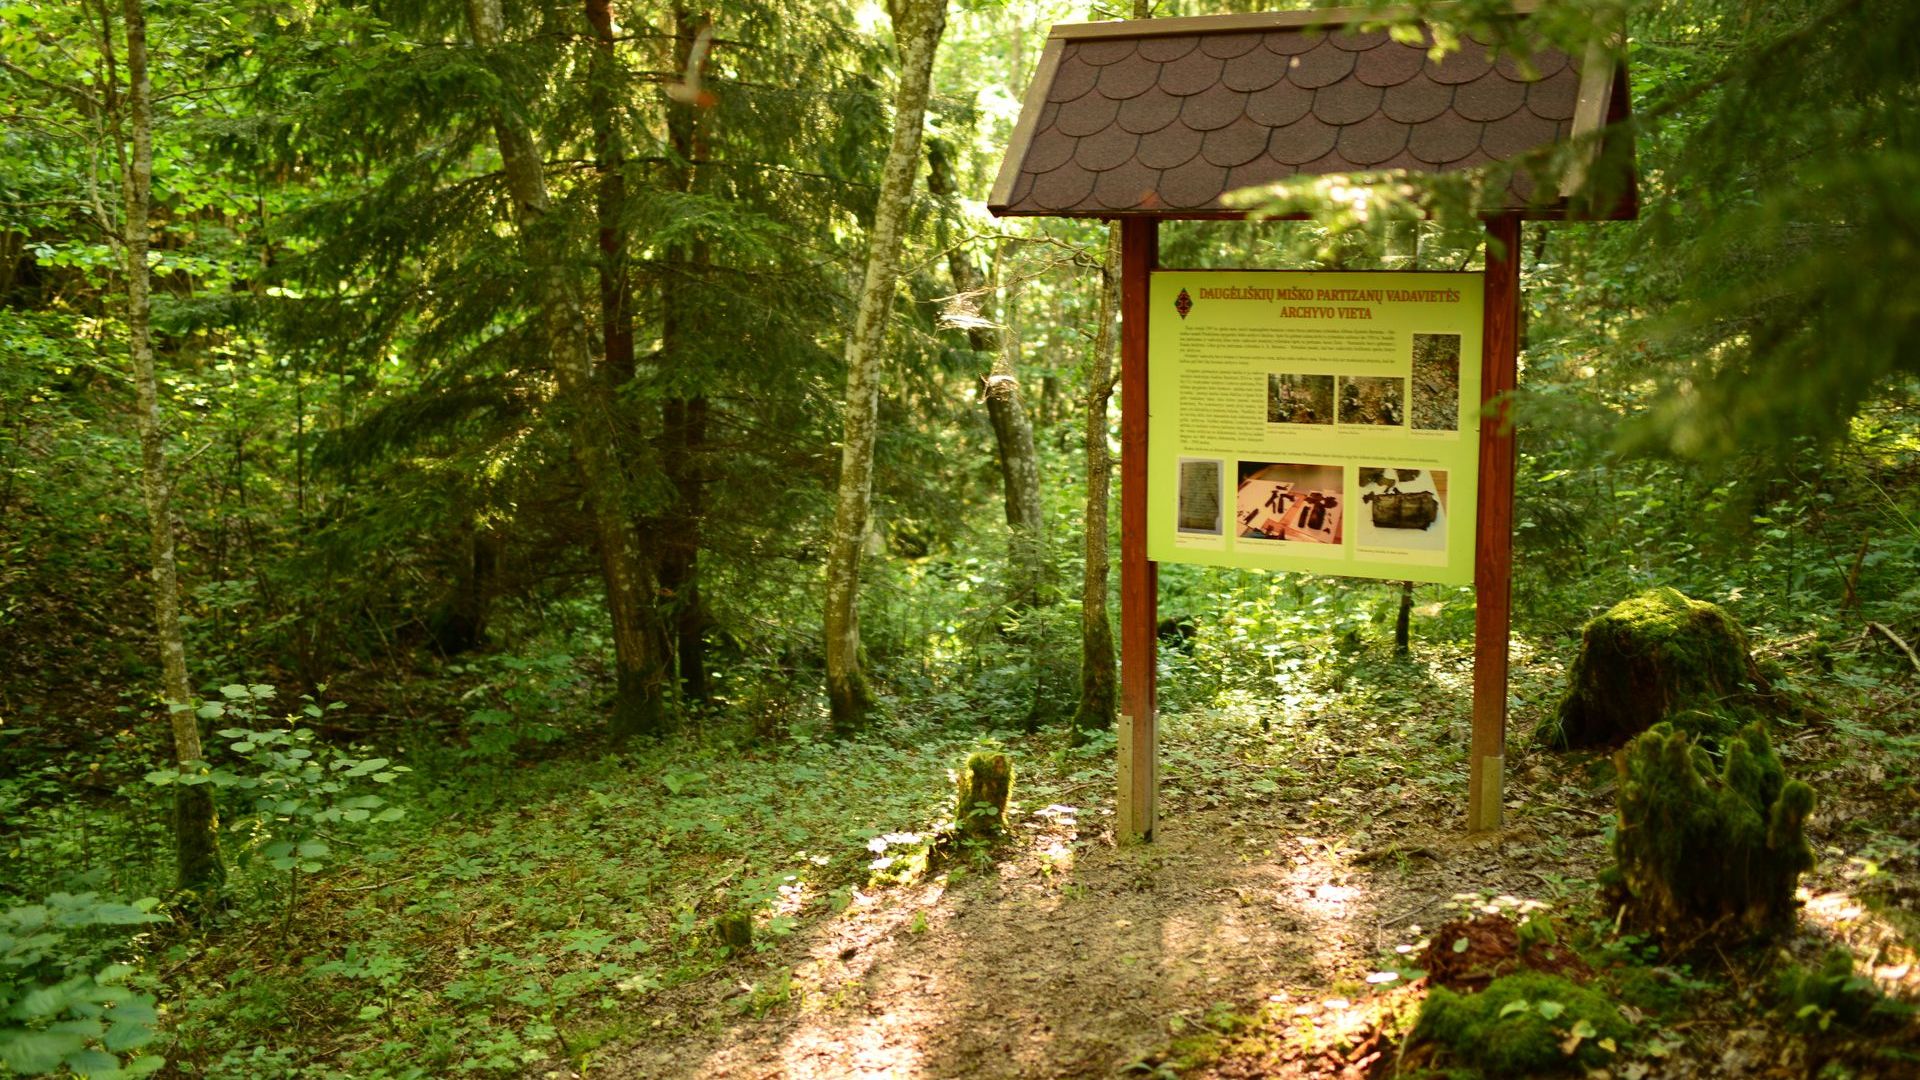 Daugėliškių miško partizanų vadavietės archyvo vieta